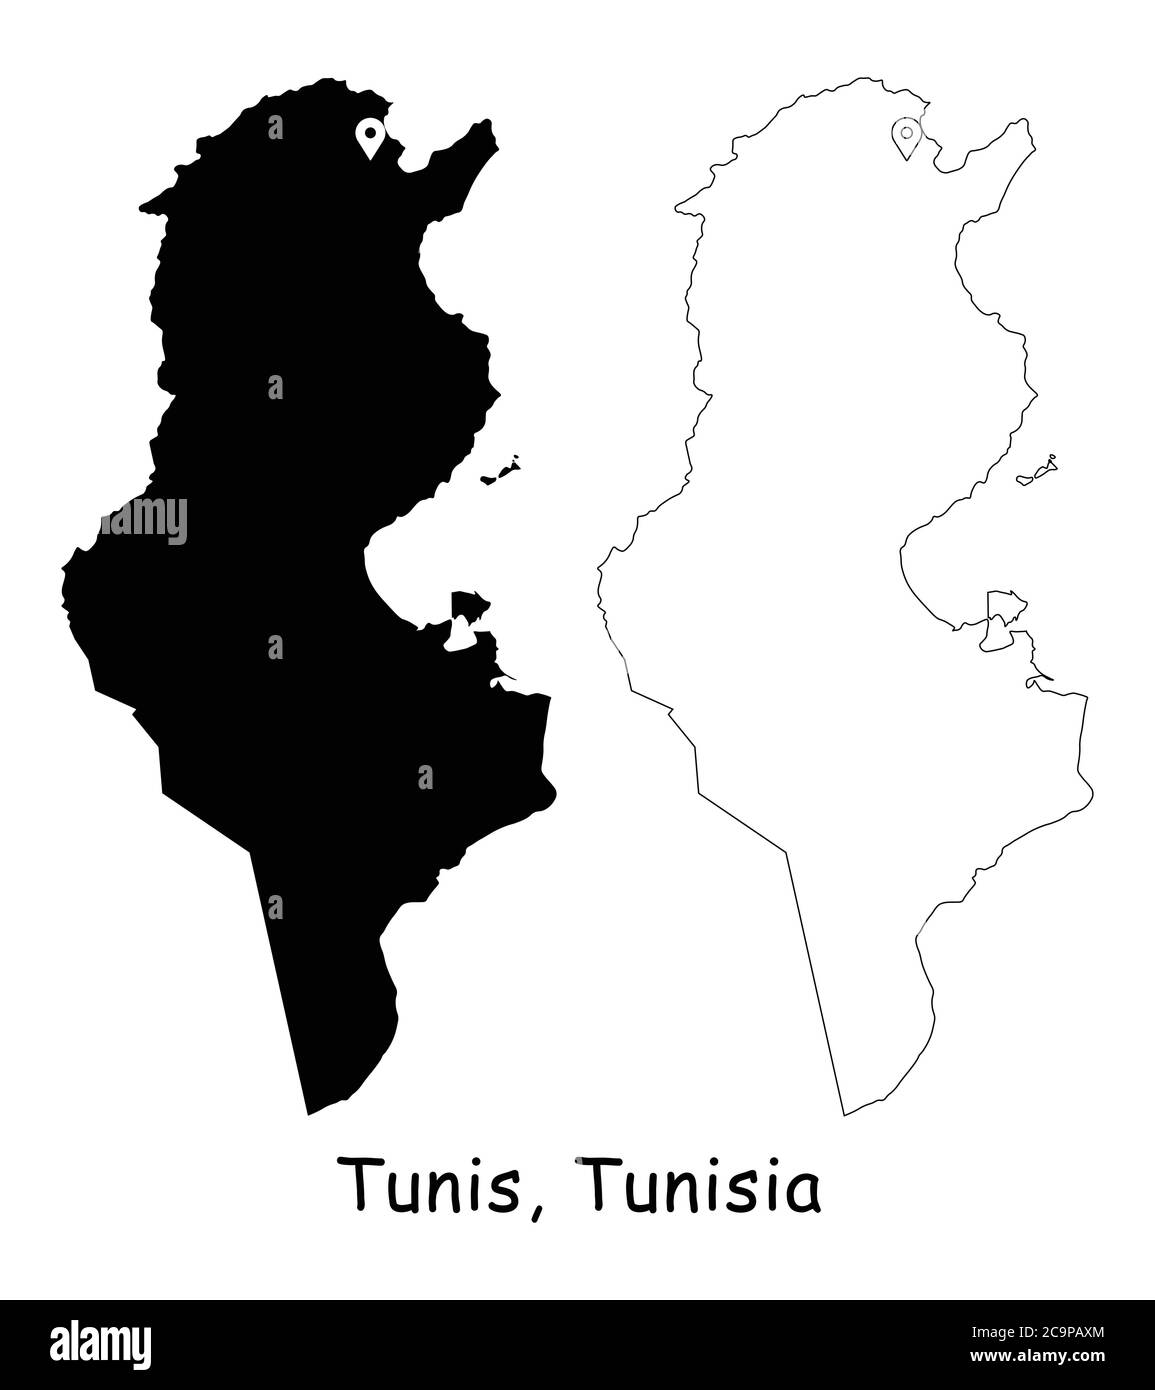 Tunis, Tunesien. Detaillierte Landkarte mit Lage Pin auf Hauptstadt. Schwarze Silhouette und Umrisskarten isoliert auf weißem Hintergrund. EPS-Vektor Stock Vektor